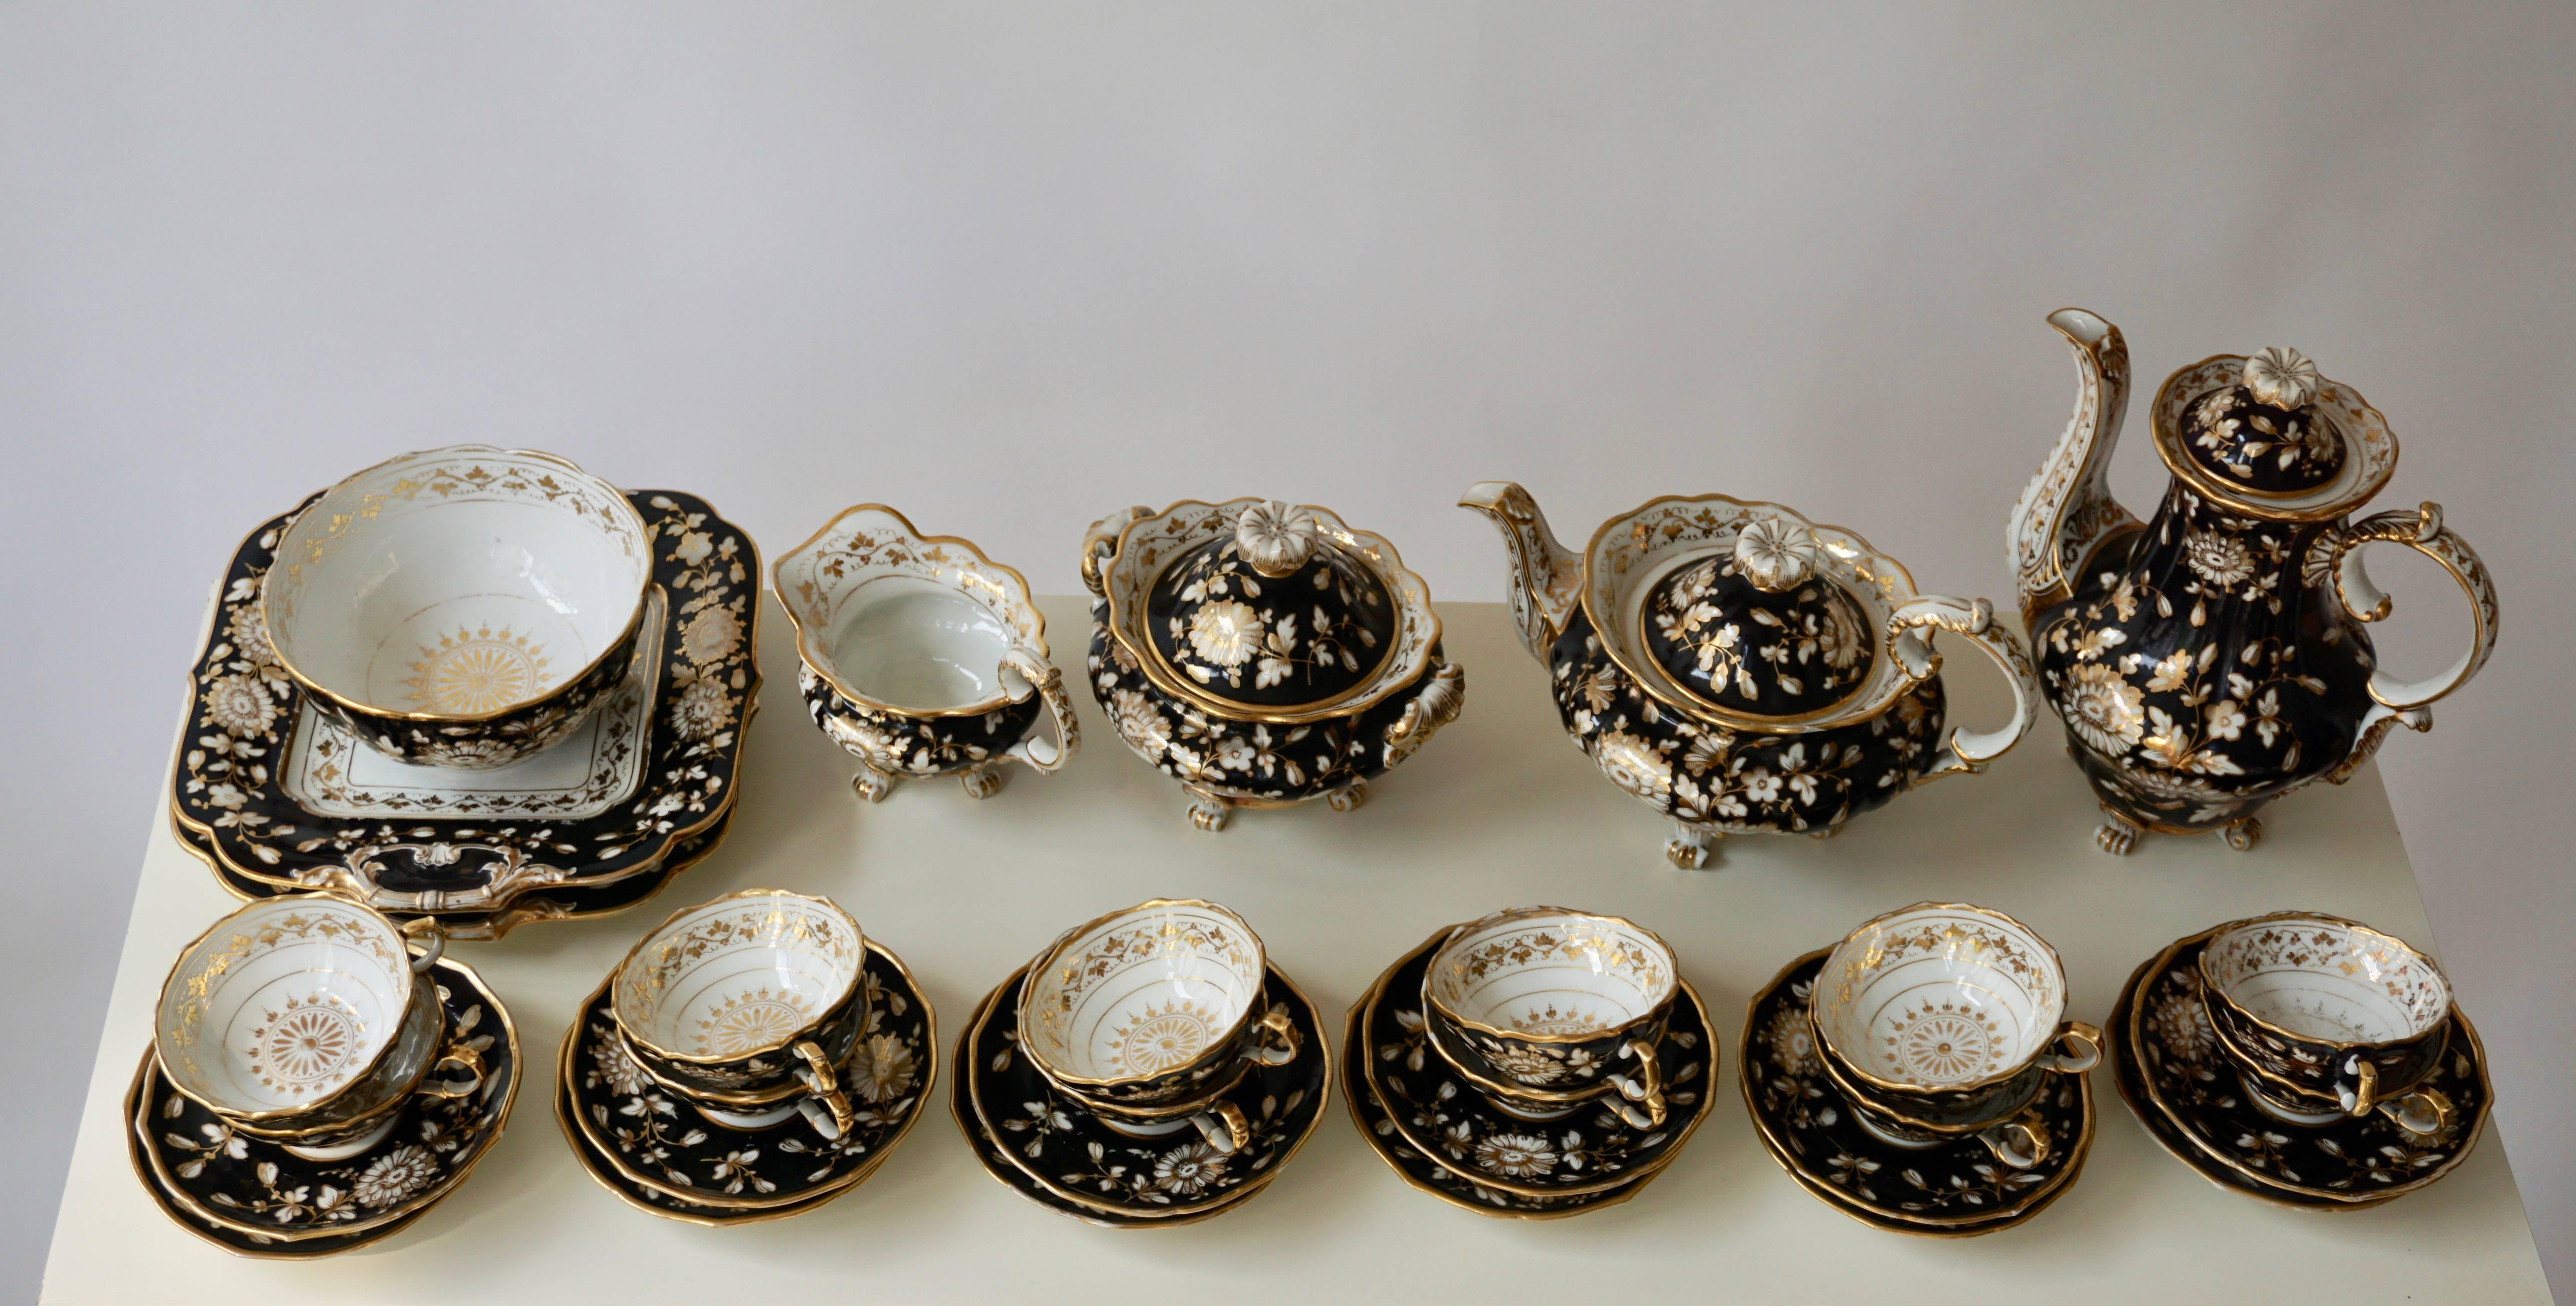 20th Century Jacob Petit Paris Gilded Porcelain Tea Service for 12